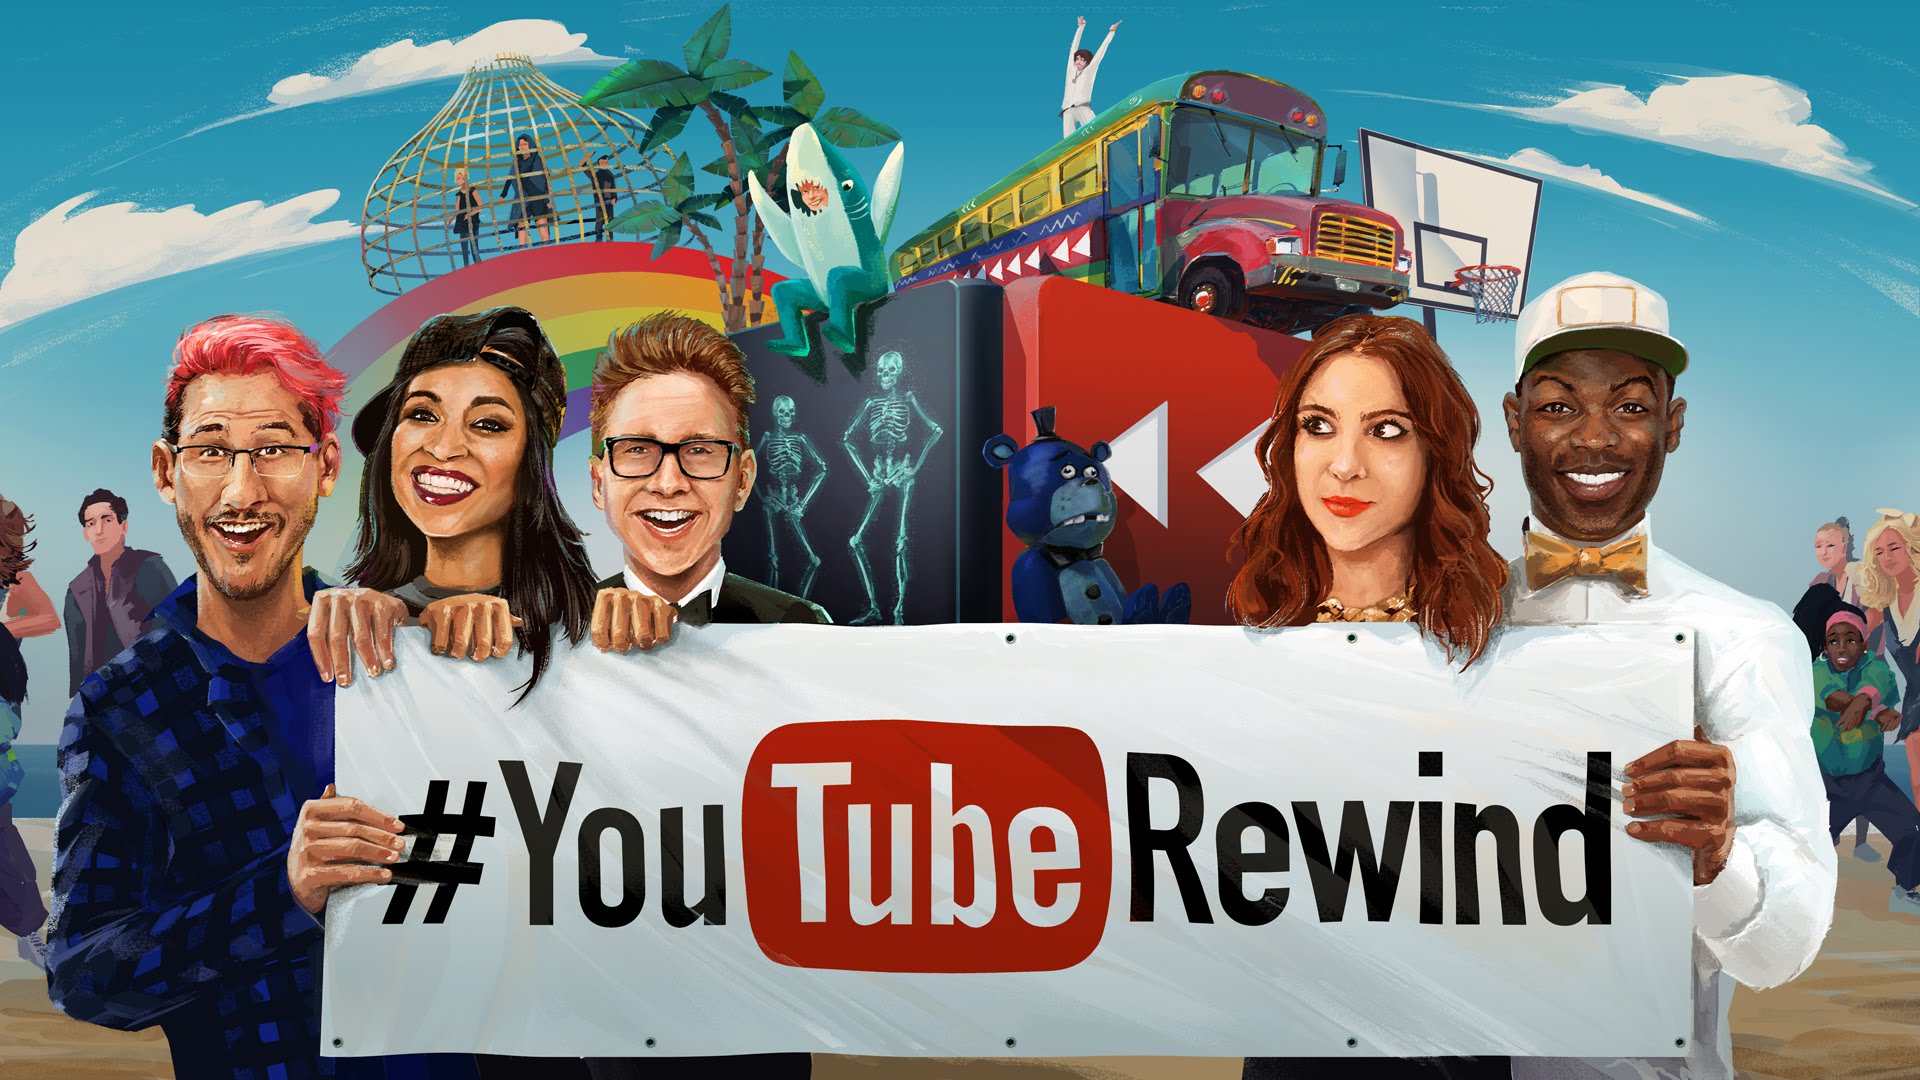 Đây là lần thứ 3 Youtube Rewind công bố danh sách video nổi bật.